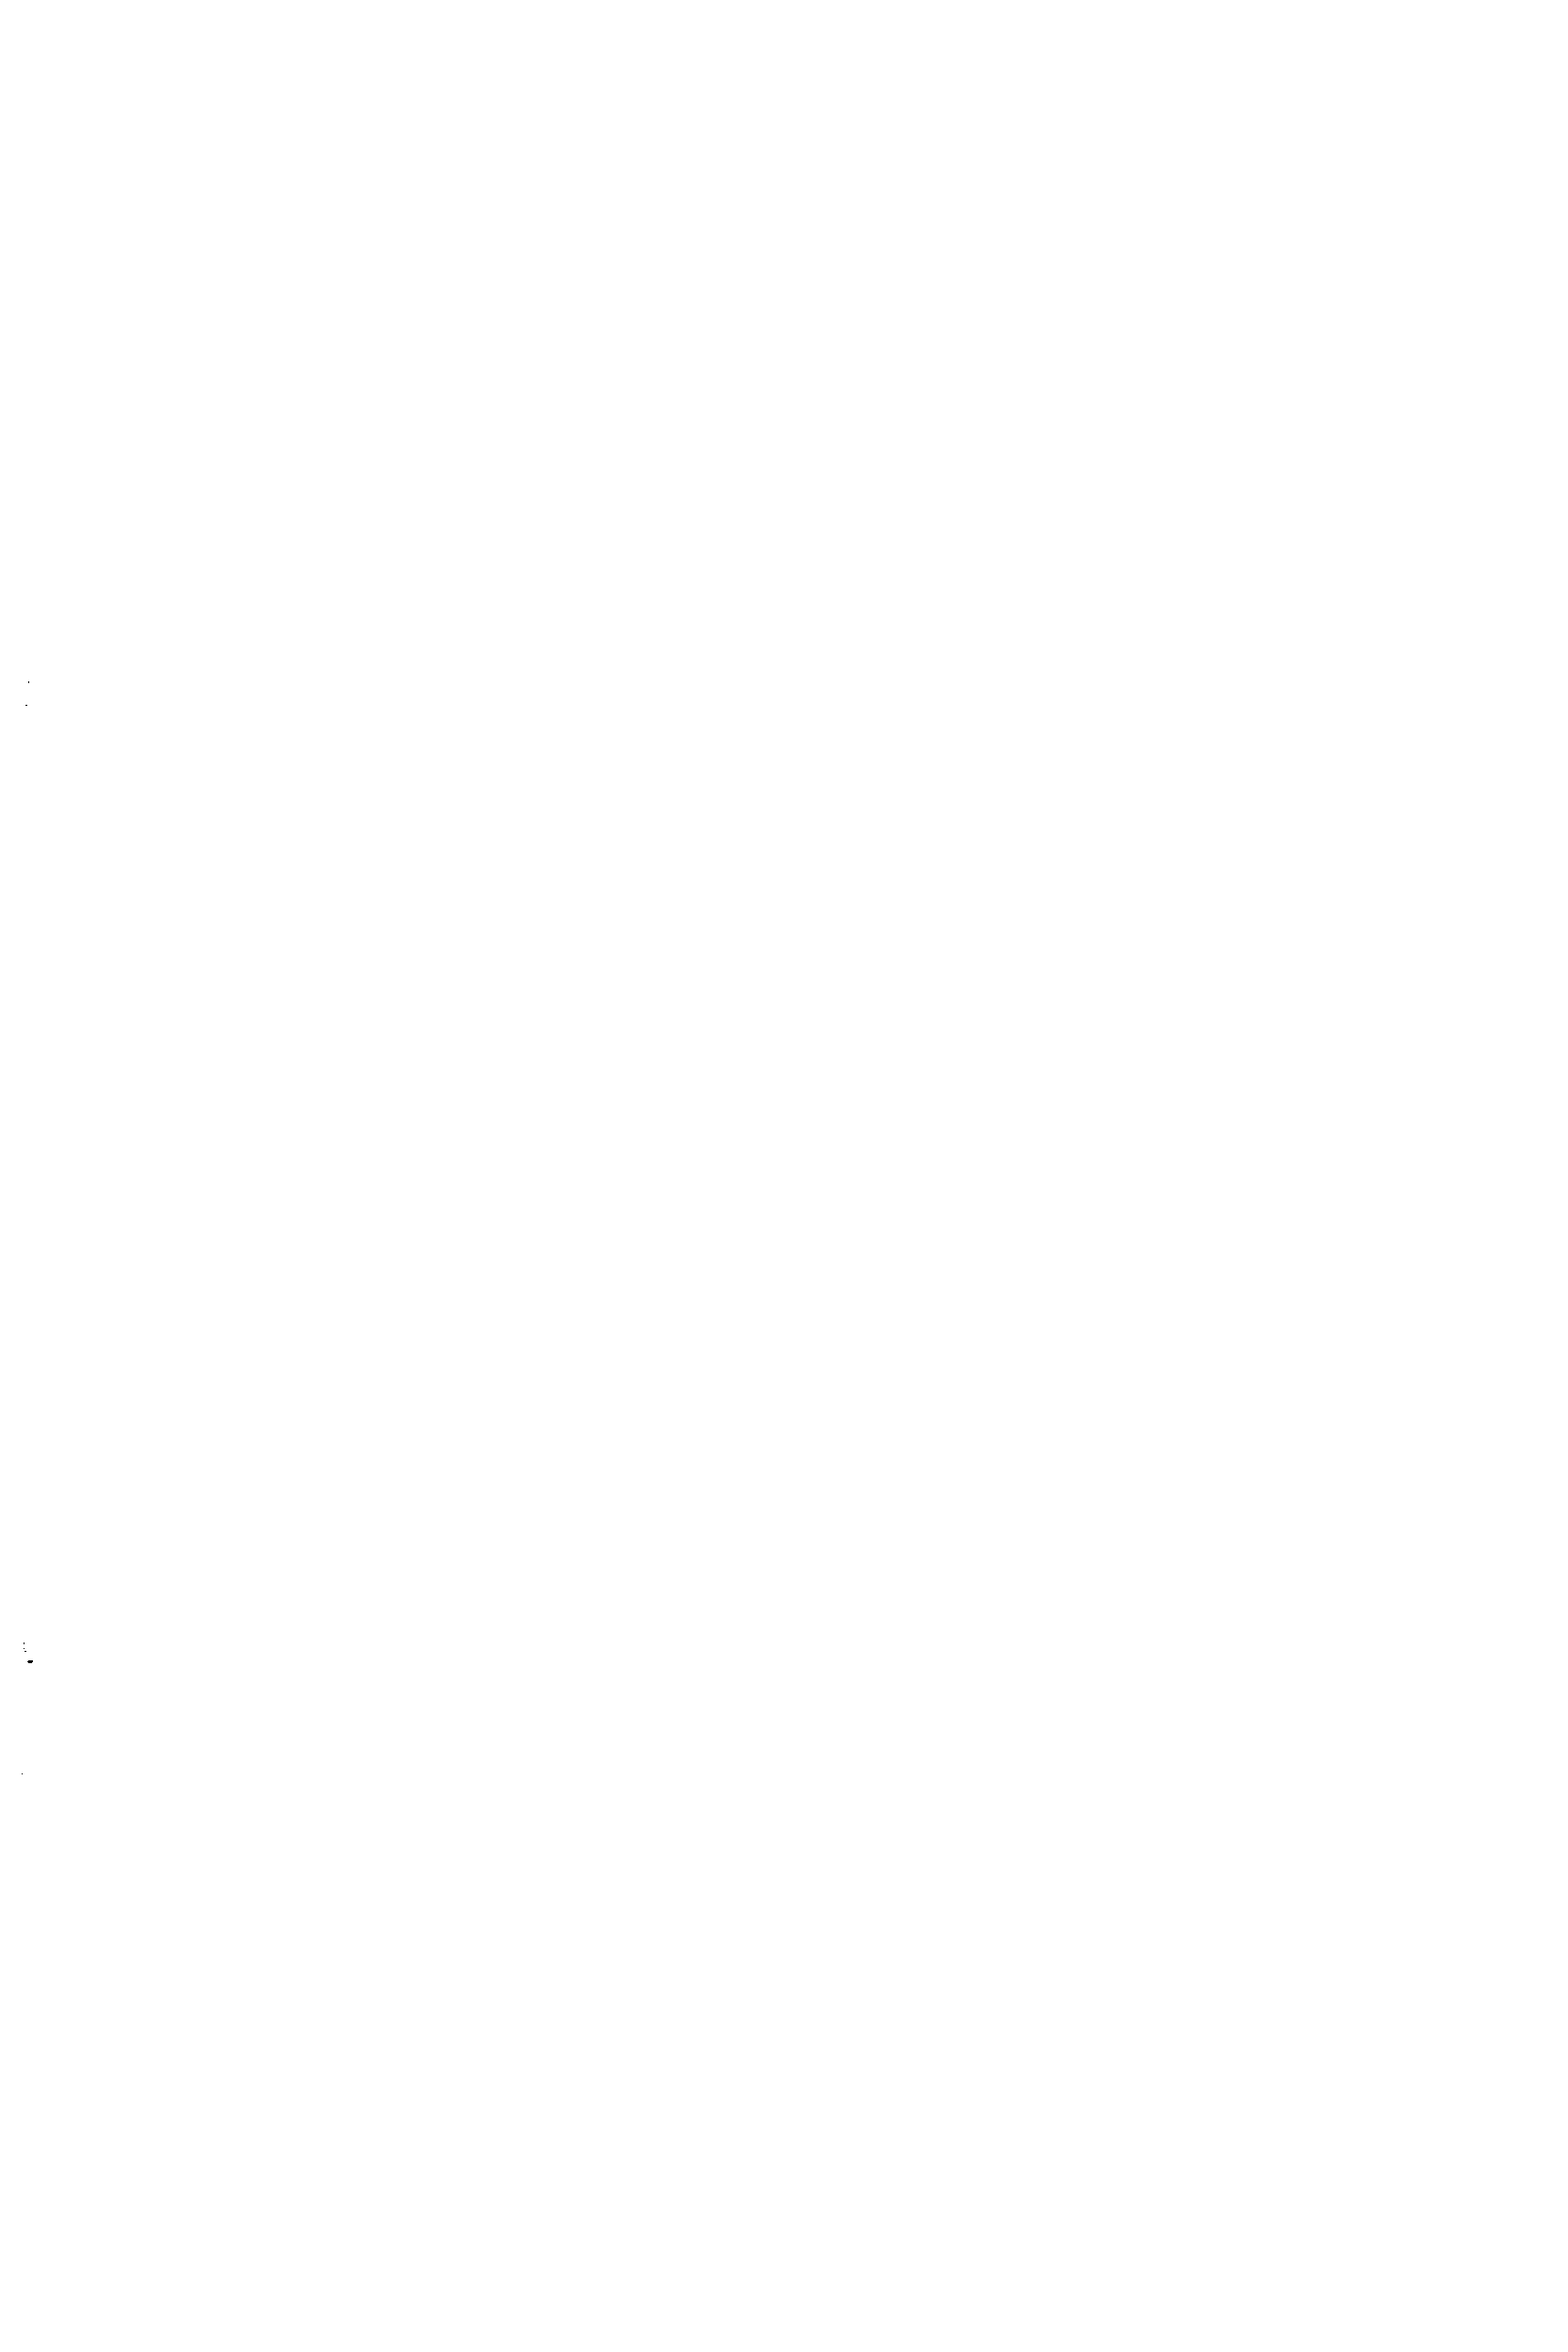 Рис. 7.5. Конструкции плоских днищ и <a href="/info/2408">сварное соединение</a> их с цилиндрическими обечайками в сварных стальных аппаратах а — с односторонним угловым швом без скоса кромки б, г, з — с двусторонним угловым швом без скоса кромок в — с односторонним угловым швом и скосом двух кромок д — с двусторонним угловым швом и двусторонним скосом кромки обечайки е — с двусторонним угловым швом и двусторонним скосом кромки днища ж — с односторонним тавровым швом и криволинейным скосом кромки днища и — с односторонним стыковым швом и подкладкой к — с односторонним стыковым швом в замок и скосом двух кромок
